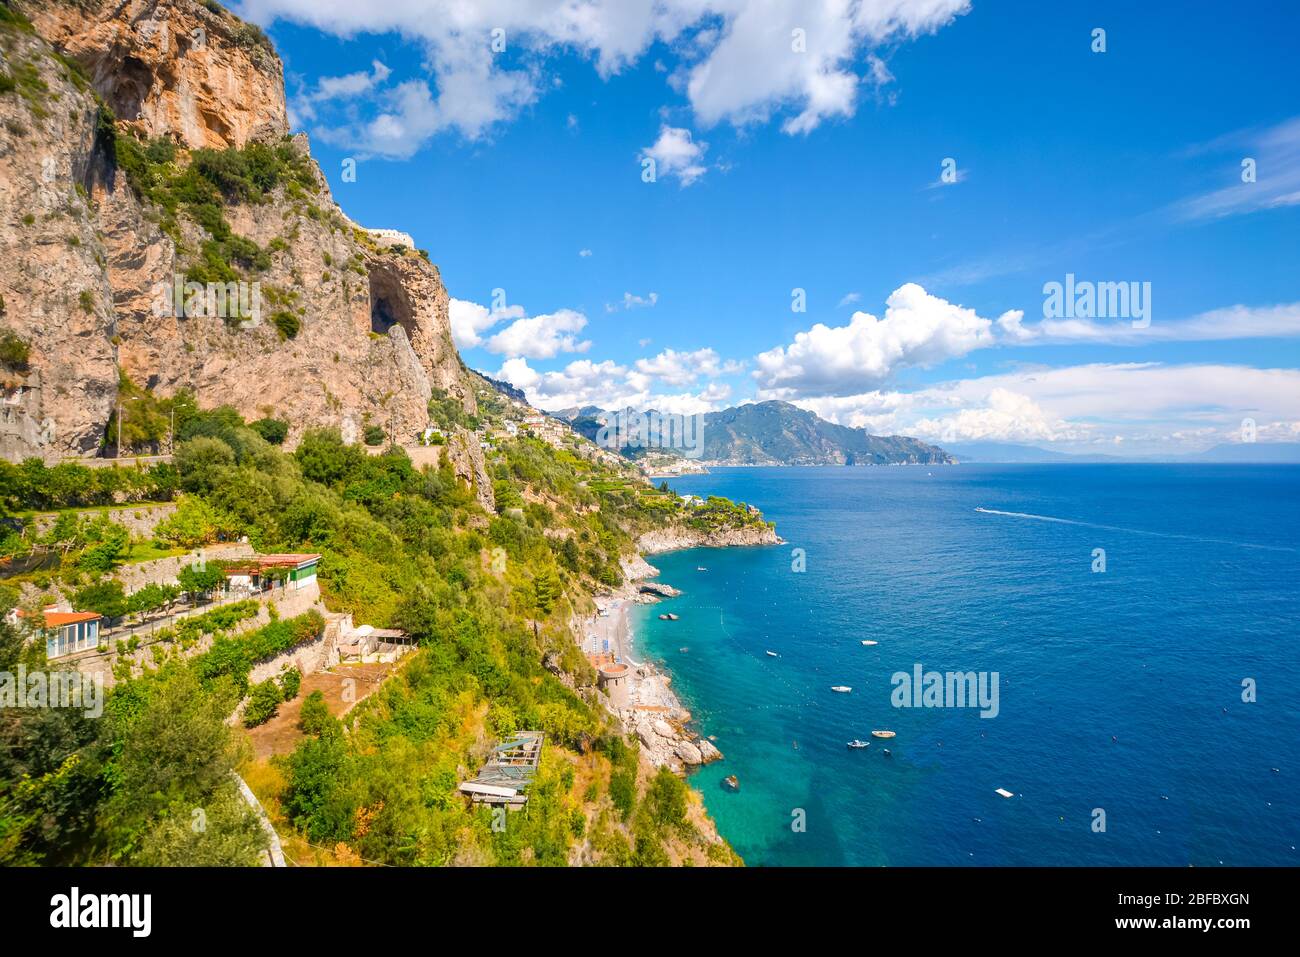 Die Amalfiküste in der Nähe von Positano und Sorrento an einem Sommernachmittag mit Booten im Wasser, einem Sandstrand und Häusern und Resorts am Hang Stockfoto